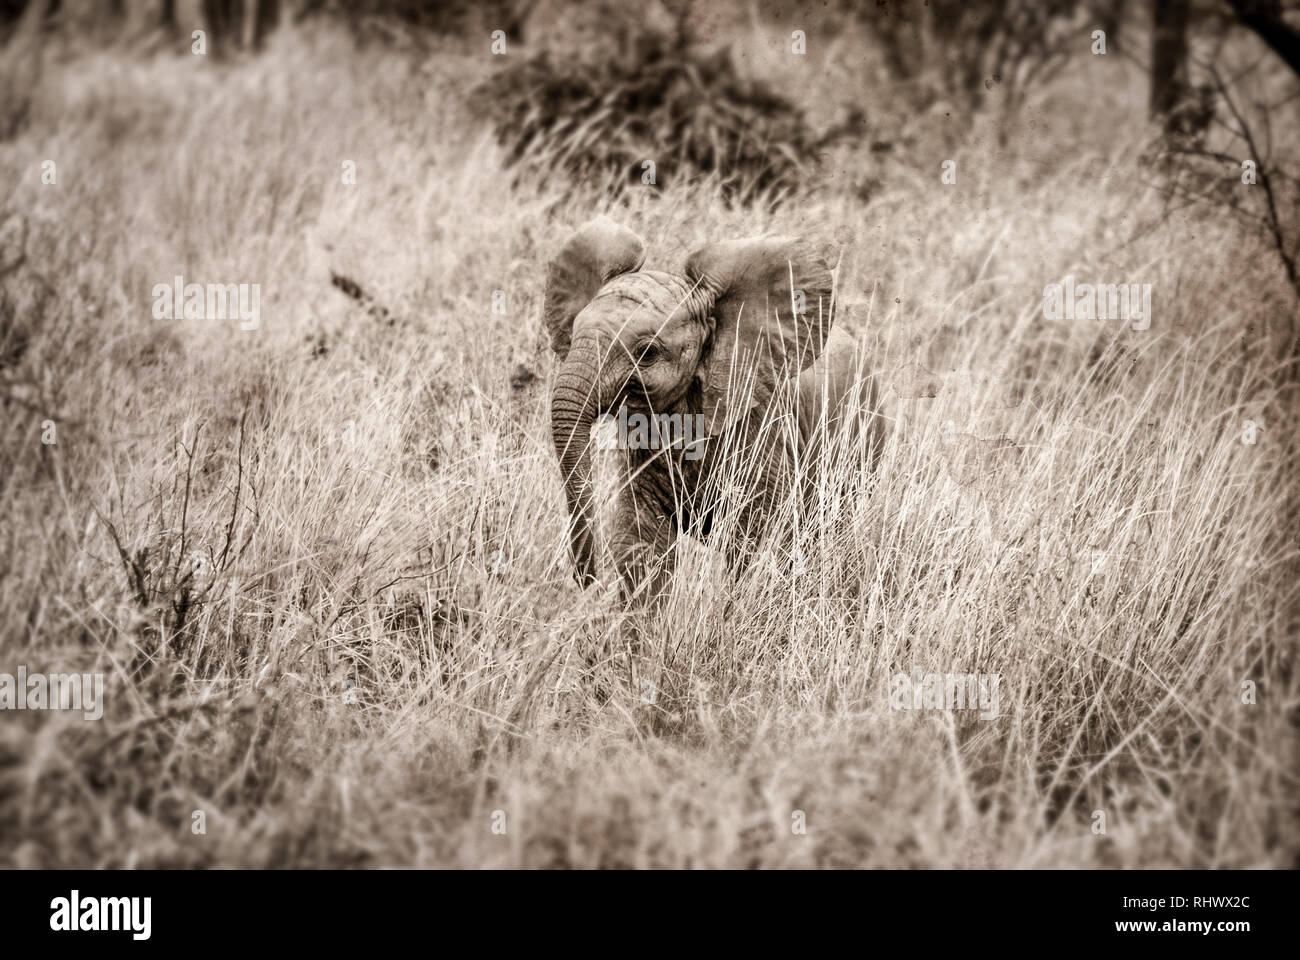 Retro verarbeitete Bild eines Elefanten Herde mit einem Kalb im Amboseli Nationalpark erfasst Stockfoto